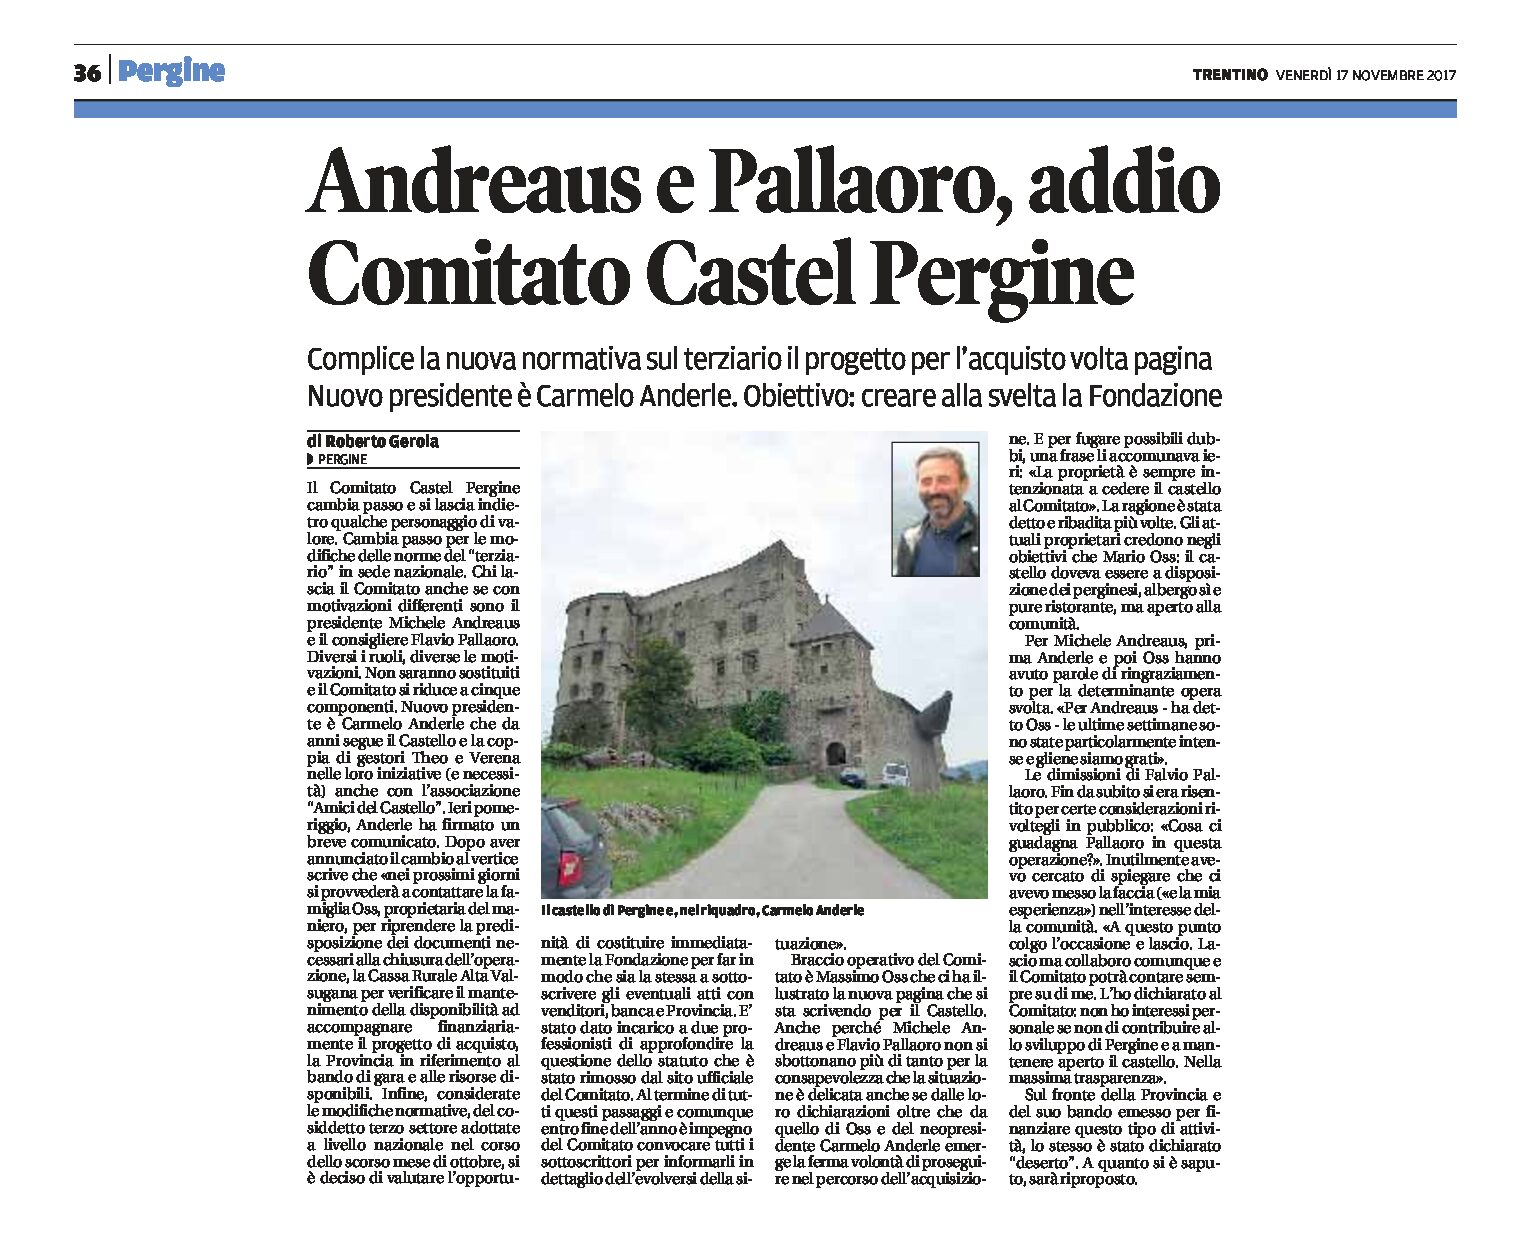 Pergine, Castello: Andreaus e Pallaoro addio. Anderle è il nuovo presidente del Comitato